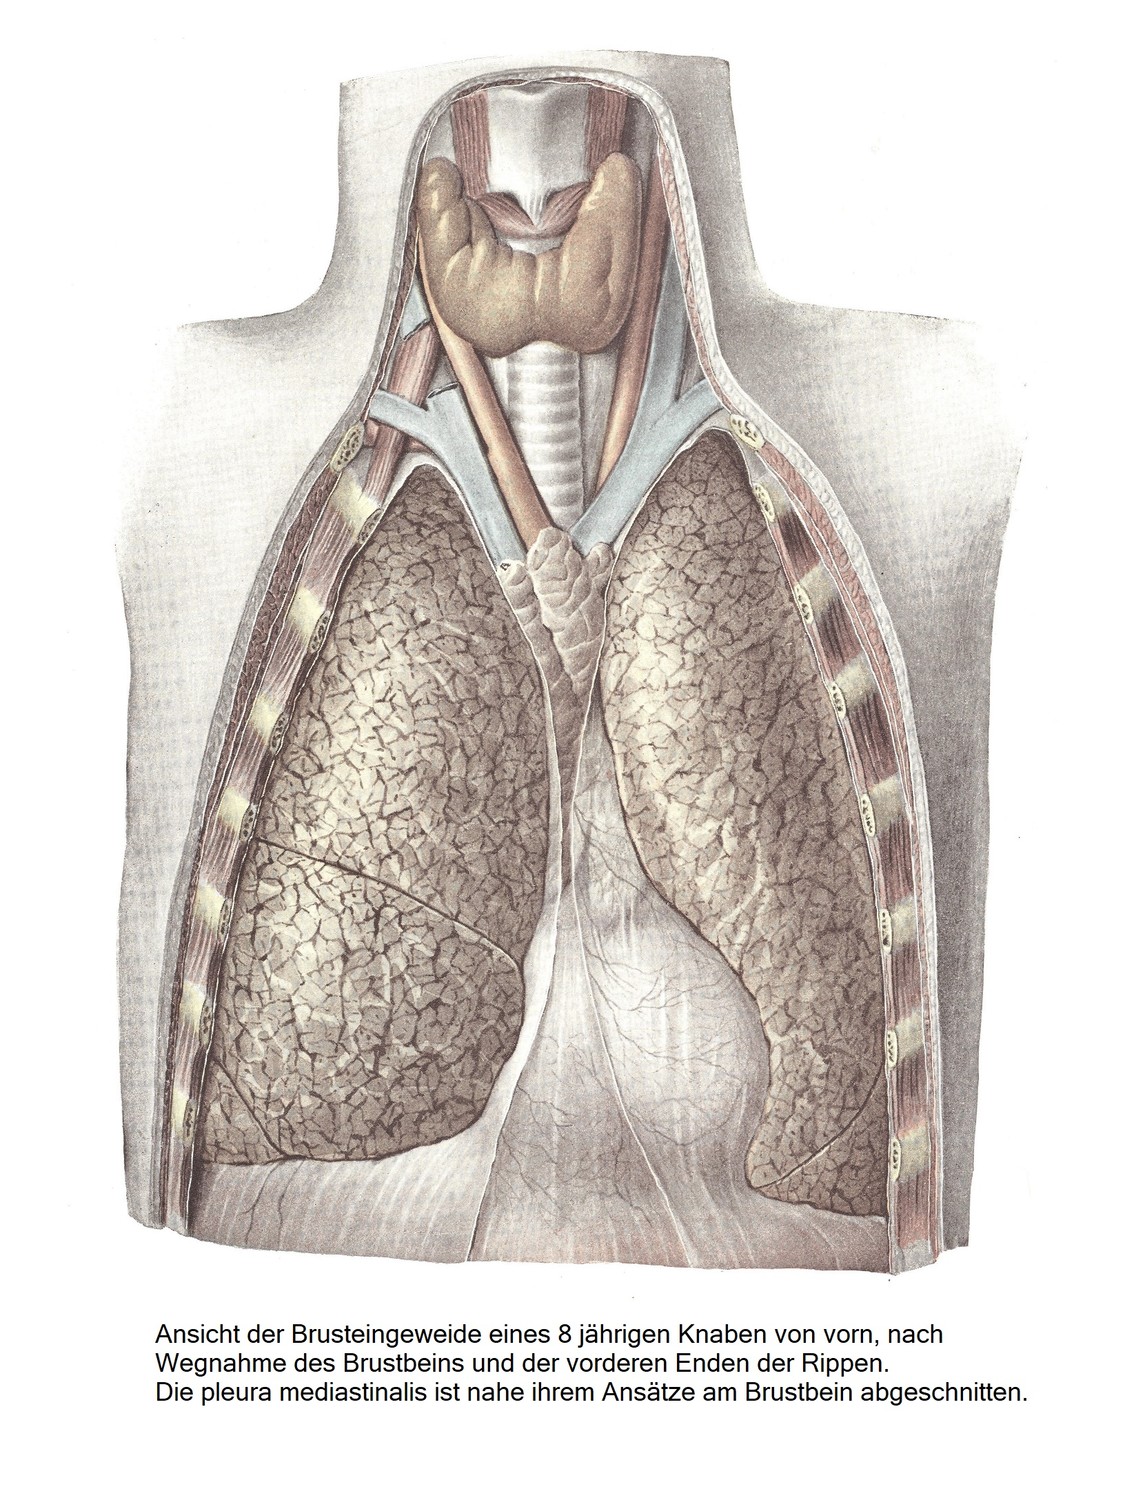 Вид спереди внутренних органов грудной клетки 8-летнего мальчика после удаления грудины и передних концов ребер. Медиастинальная плевра отсекается в месте ее прикрепления к грудине.